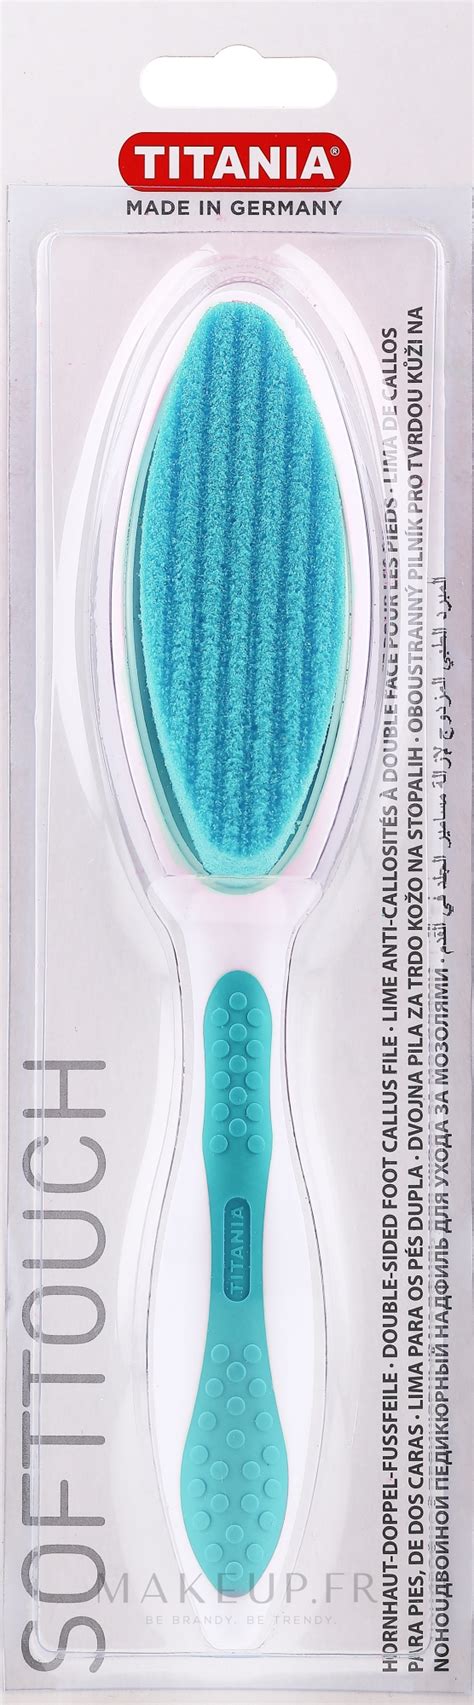 Titania - Râpe à pieds double face, turquoise | Makeup.fr